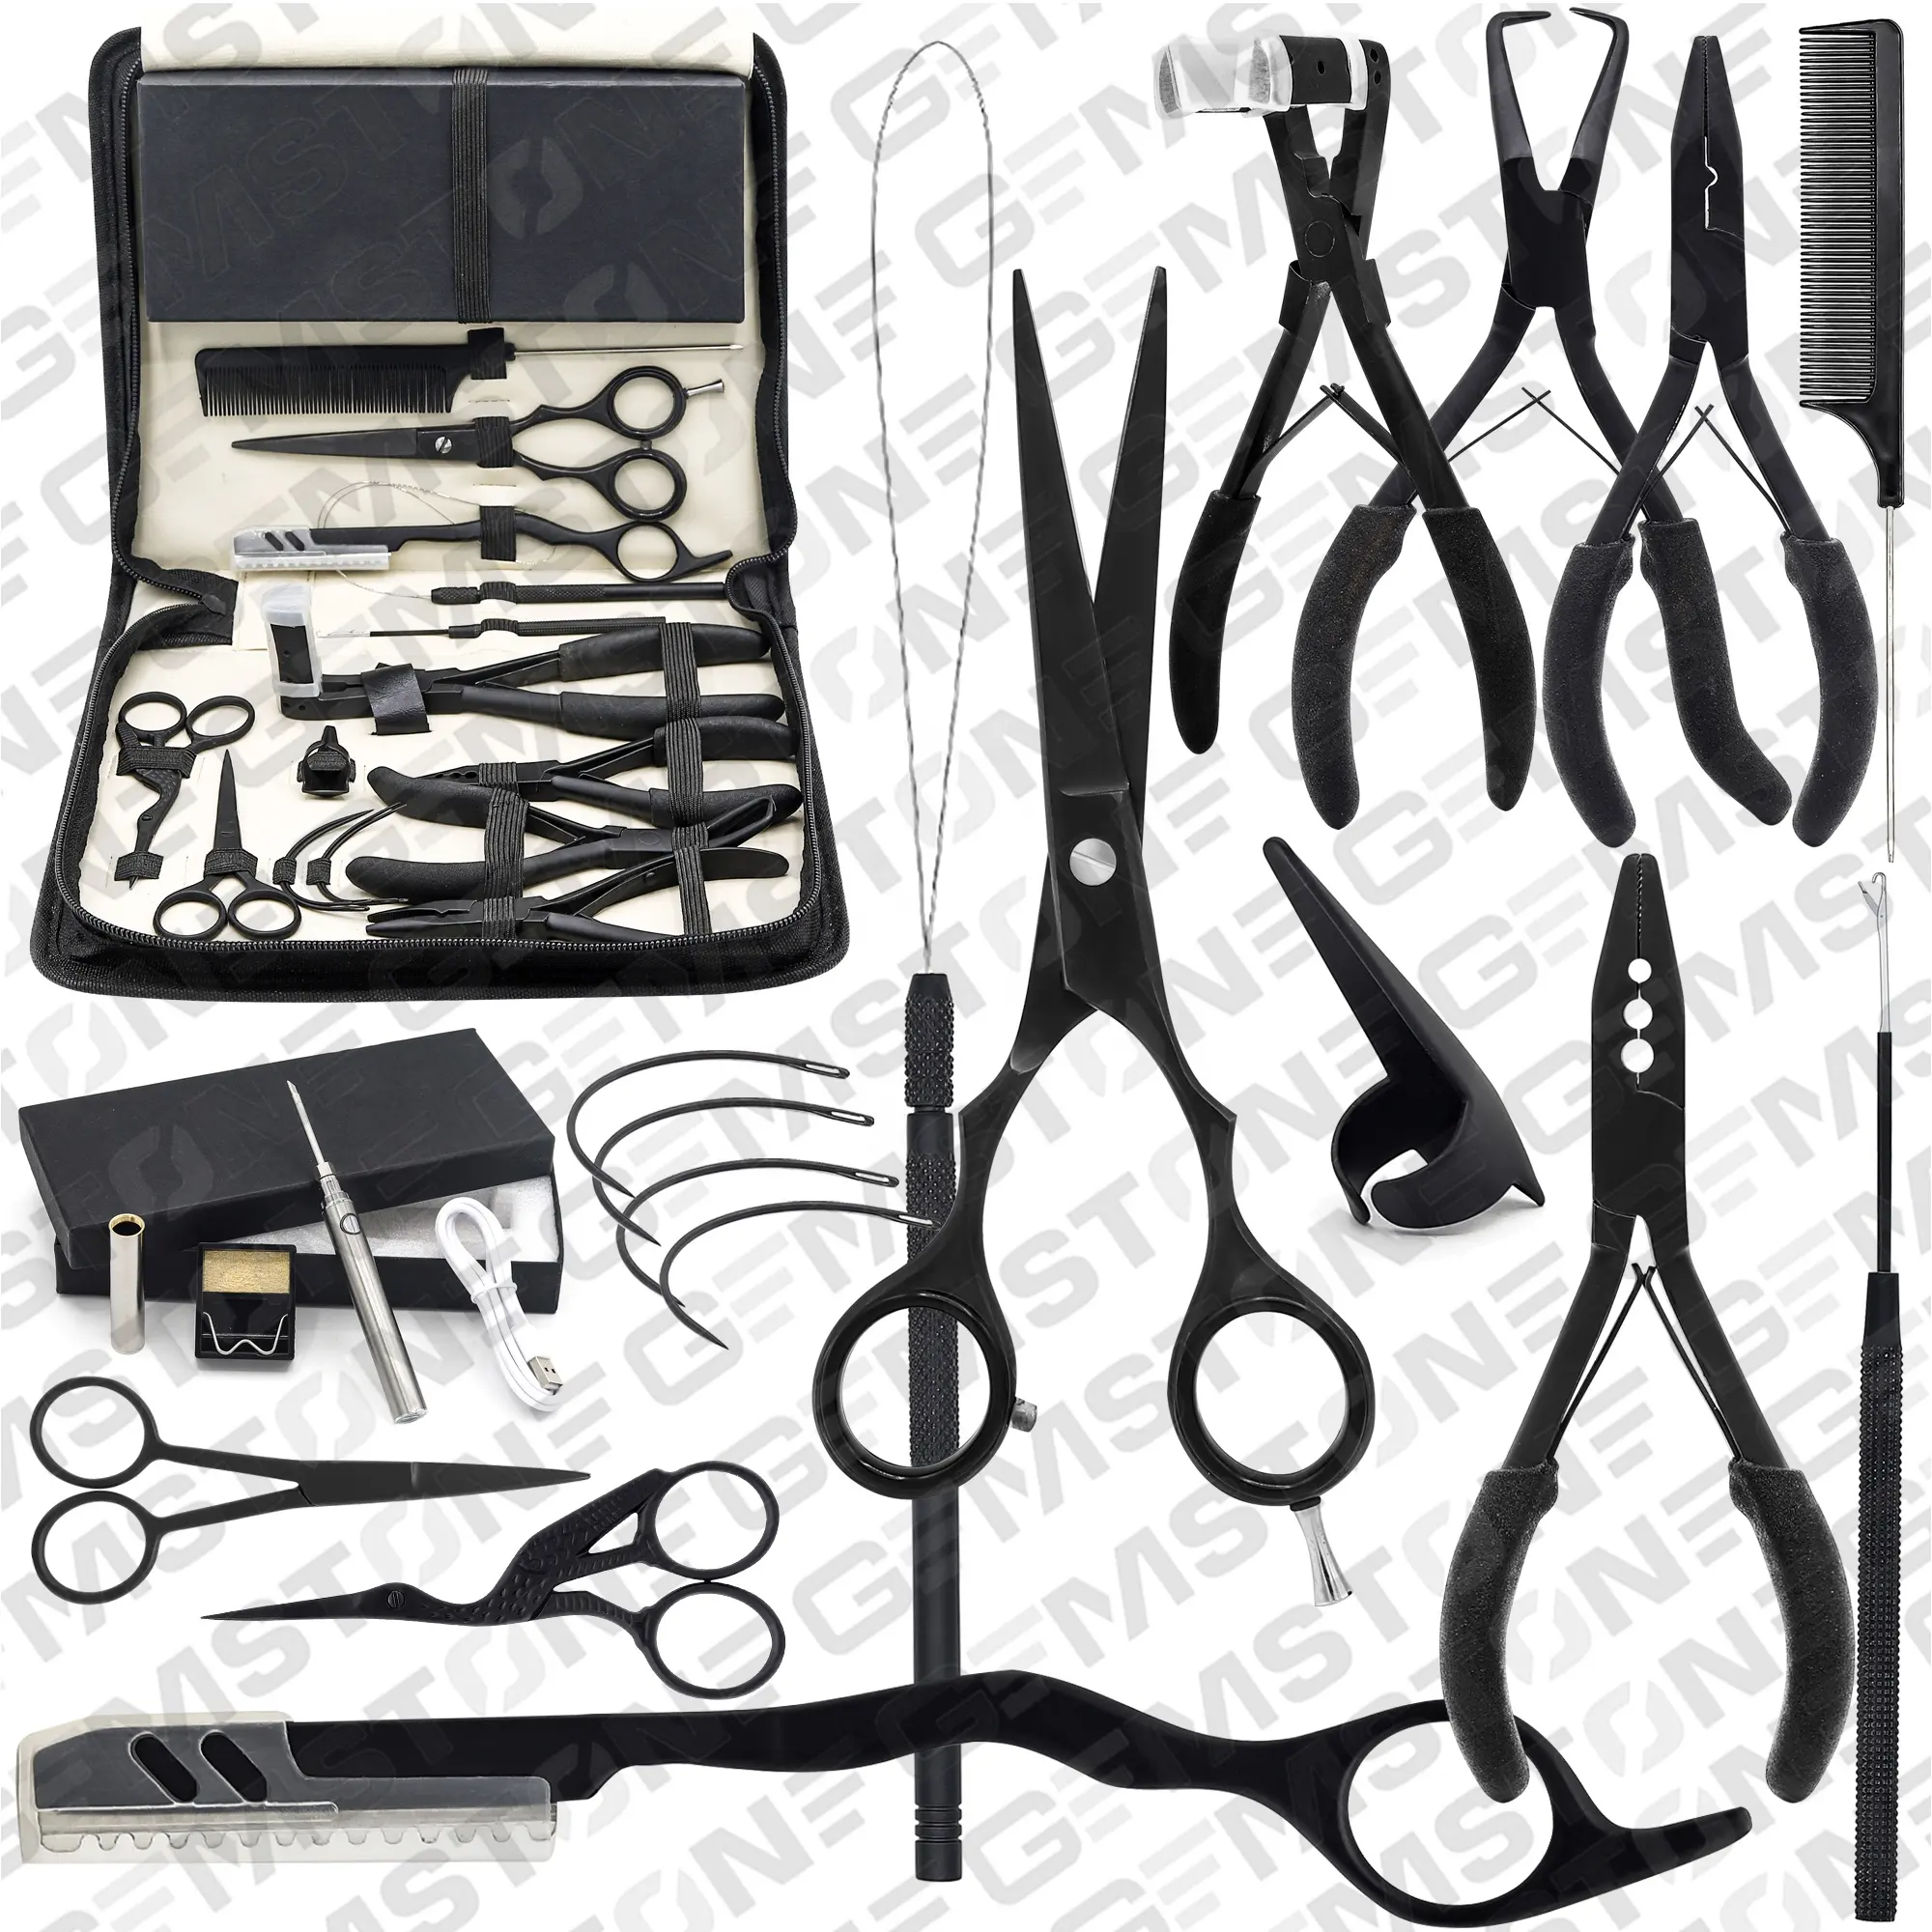 Все в одном, набор инструментов для наращивания волос с плоскогубцами, ножницами, крючками, петлями, клейкой лентой